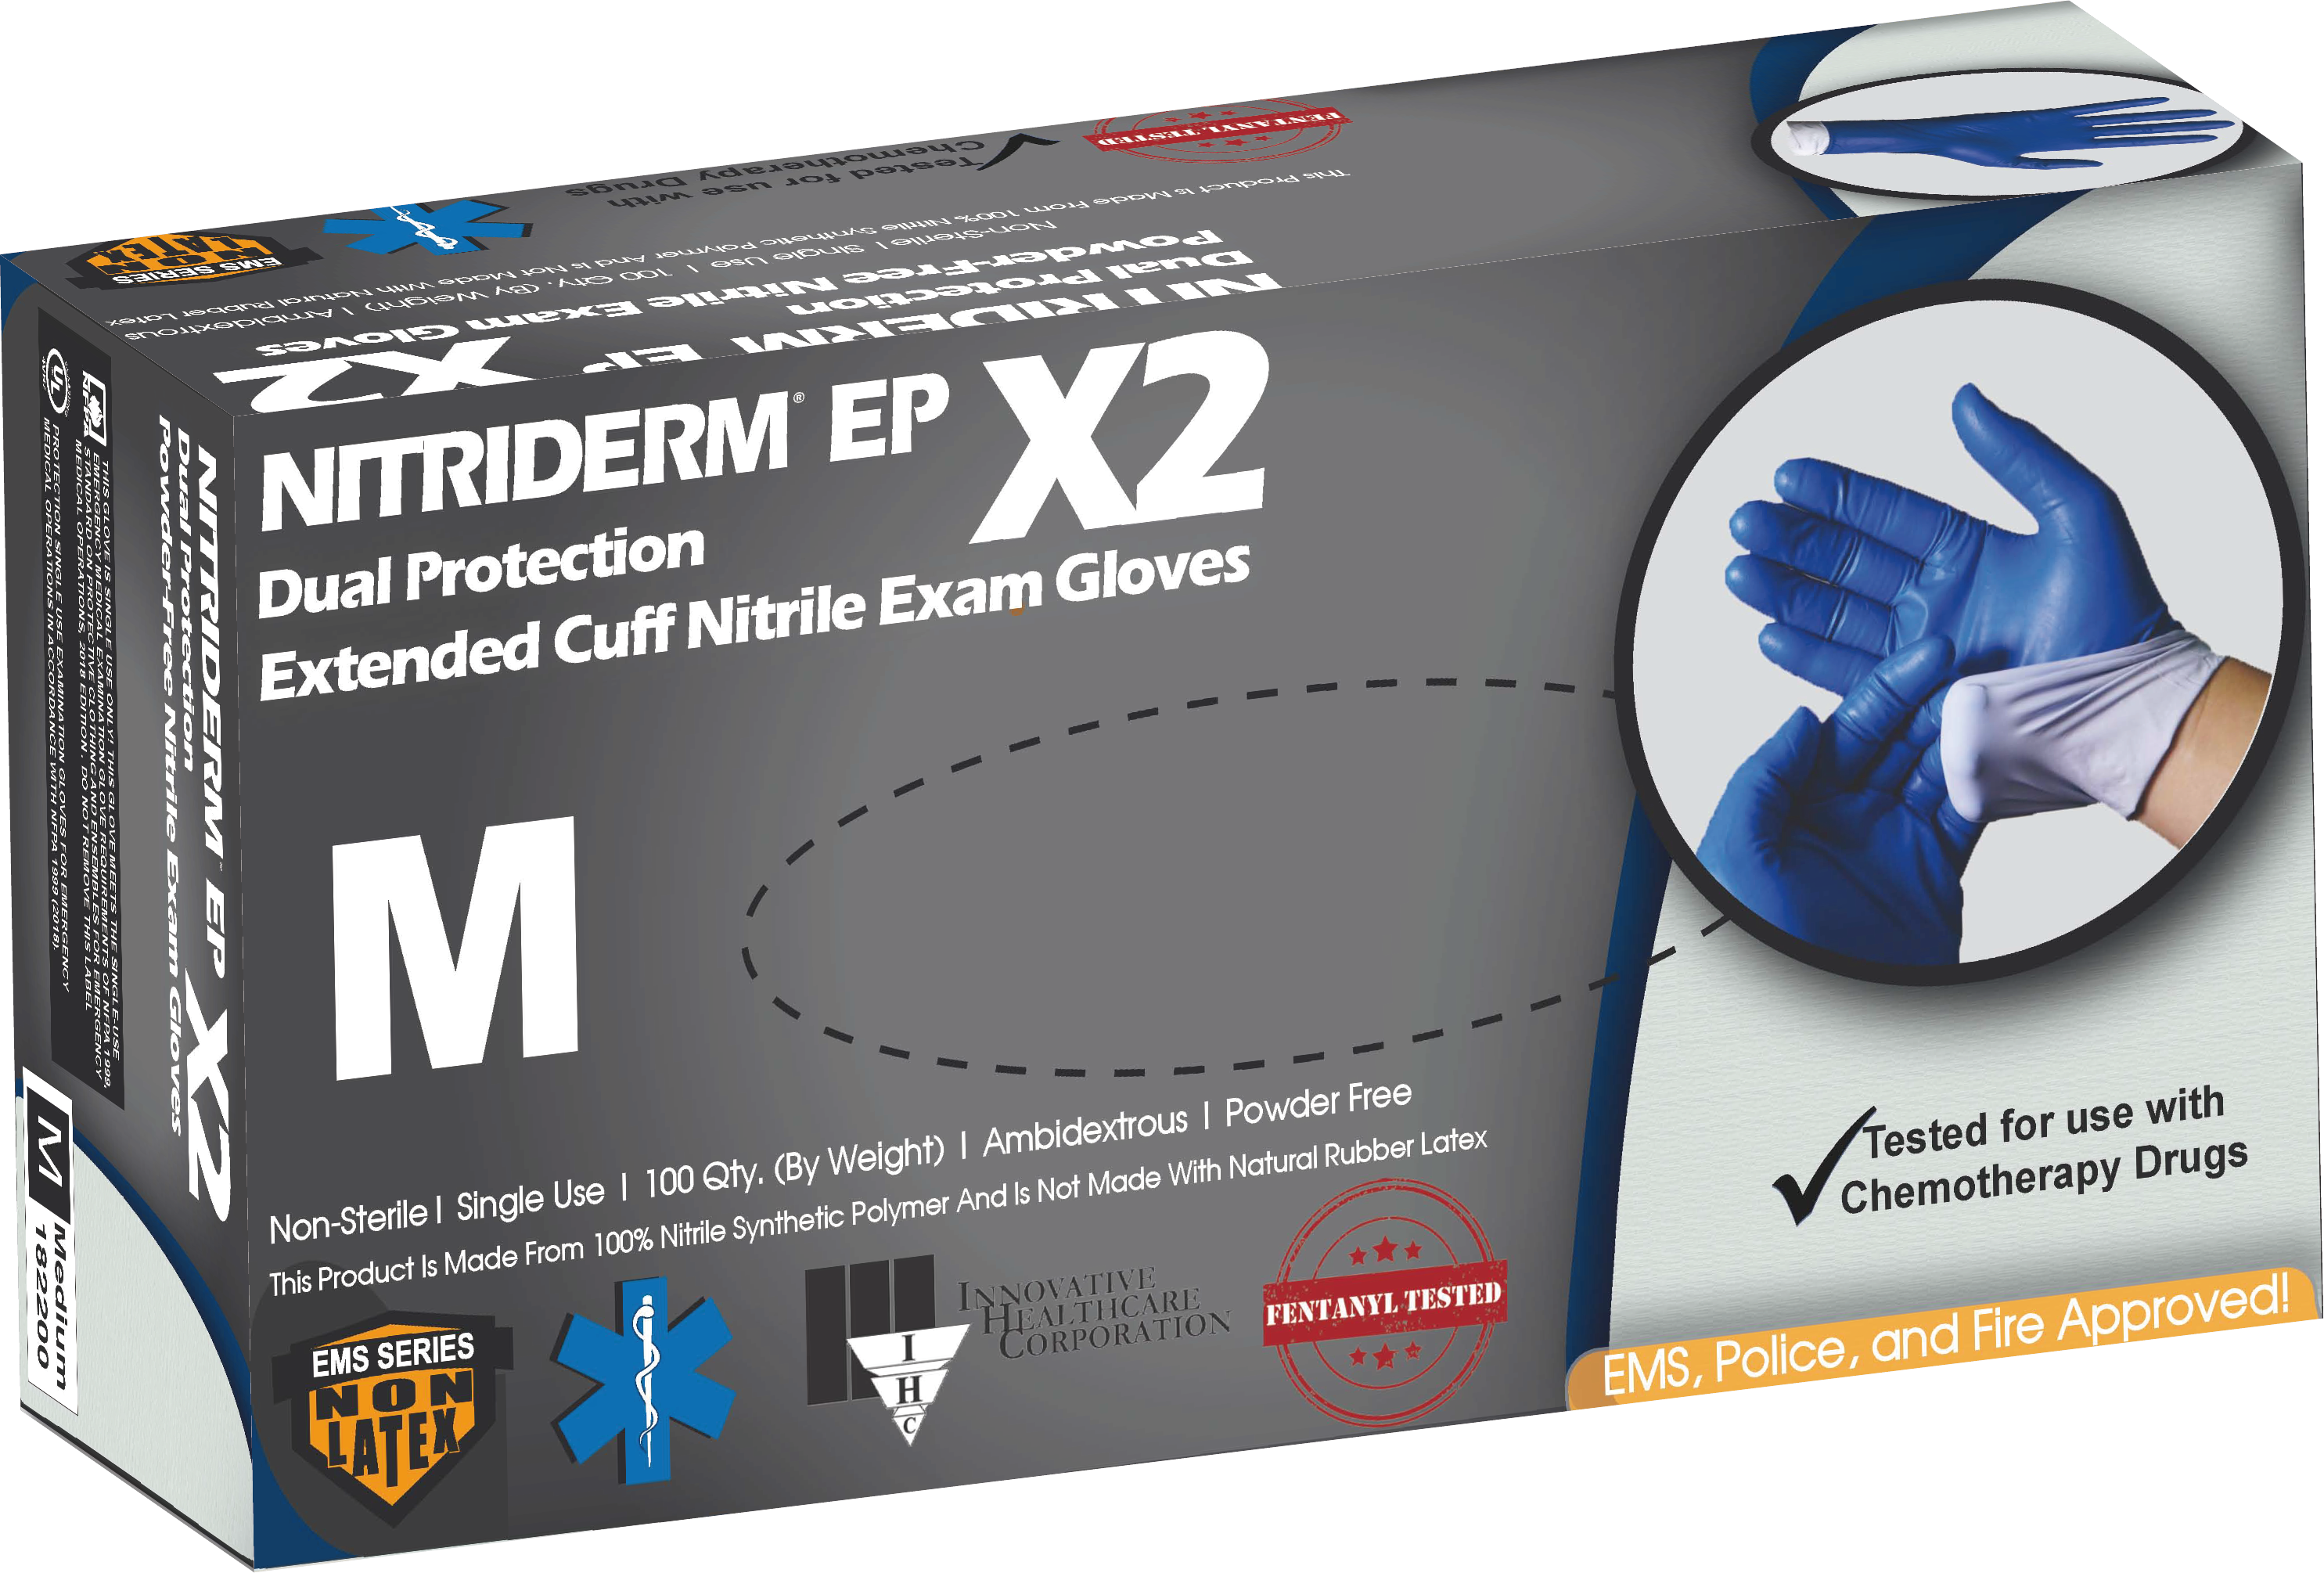 Nitrile Foam Gripster Gloves (1 pair) – Bitebuster